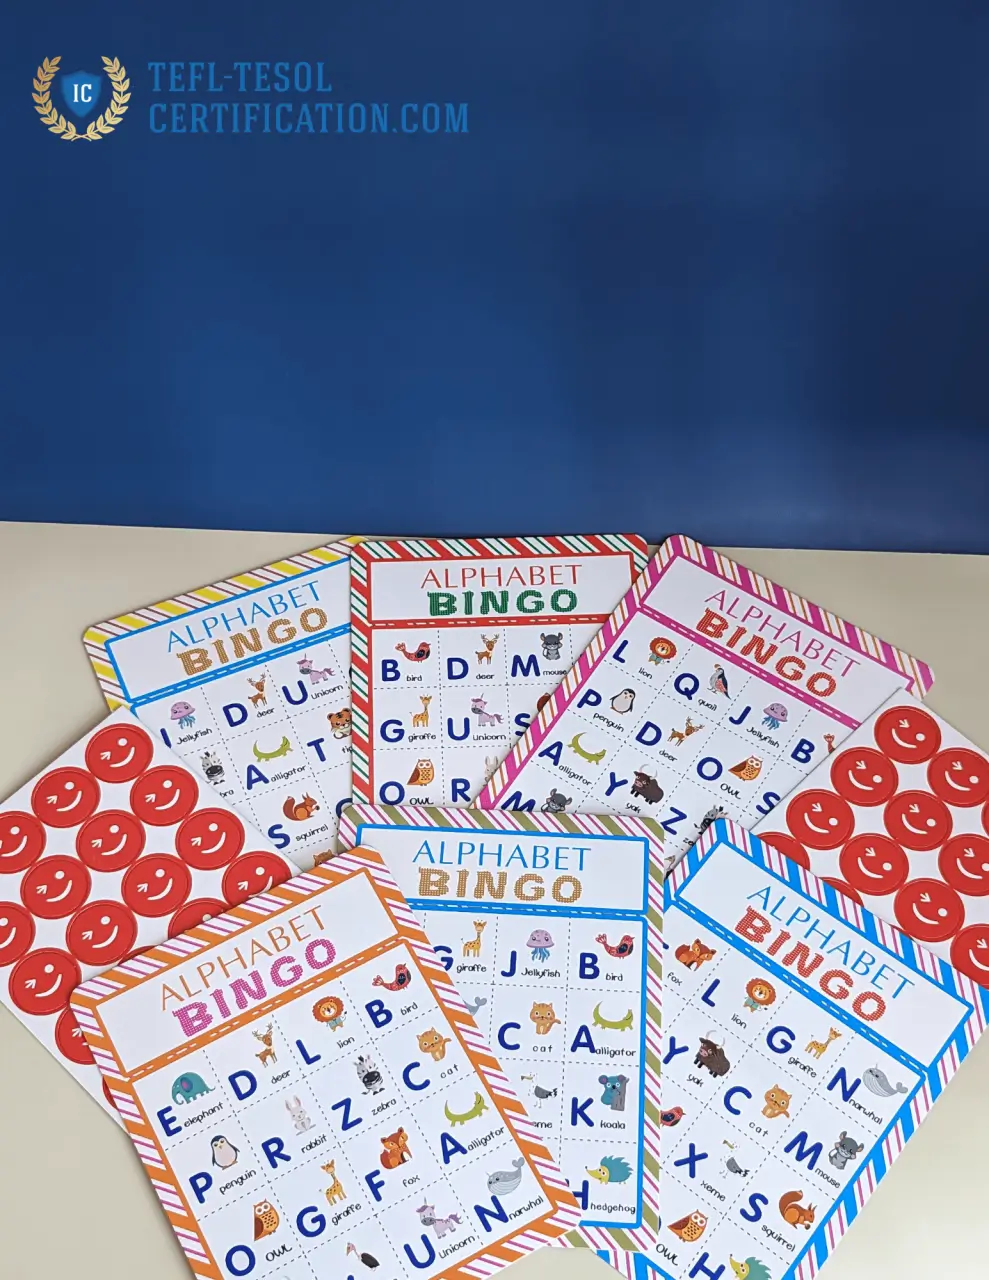 Bingo cards